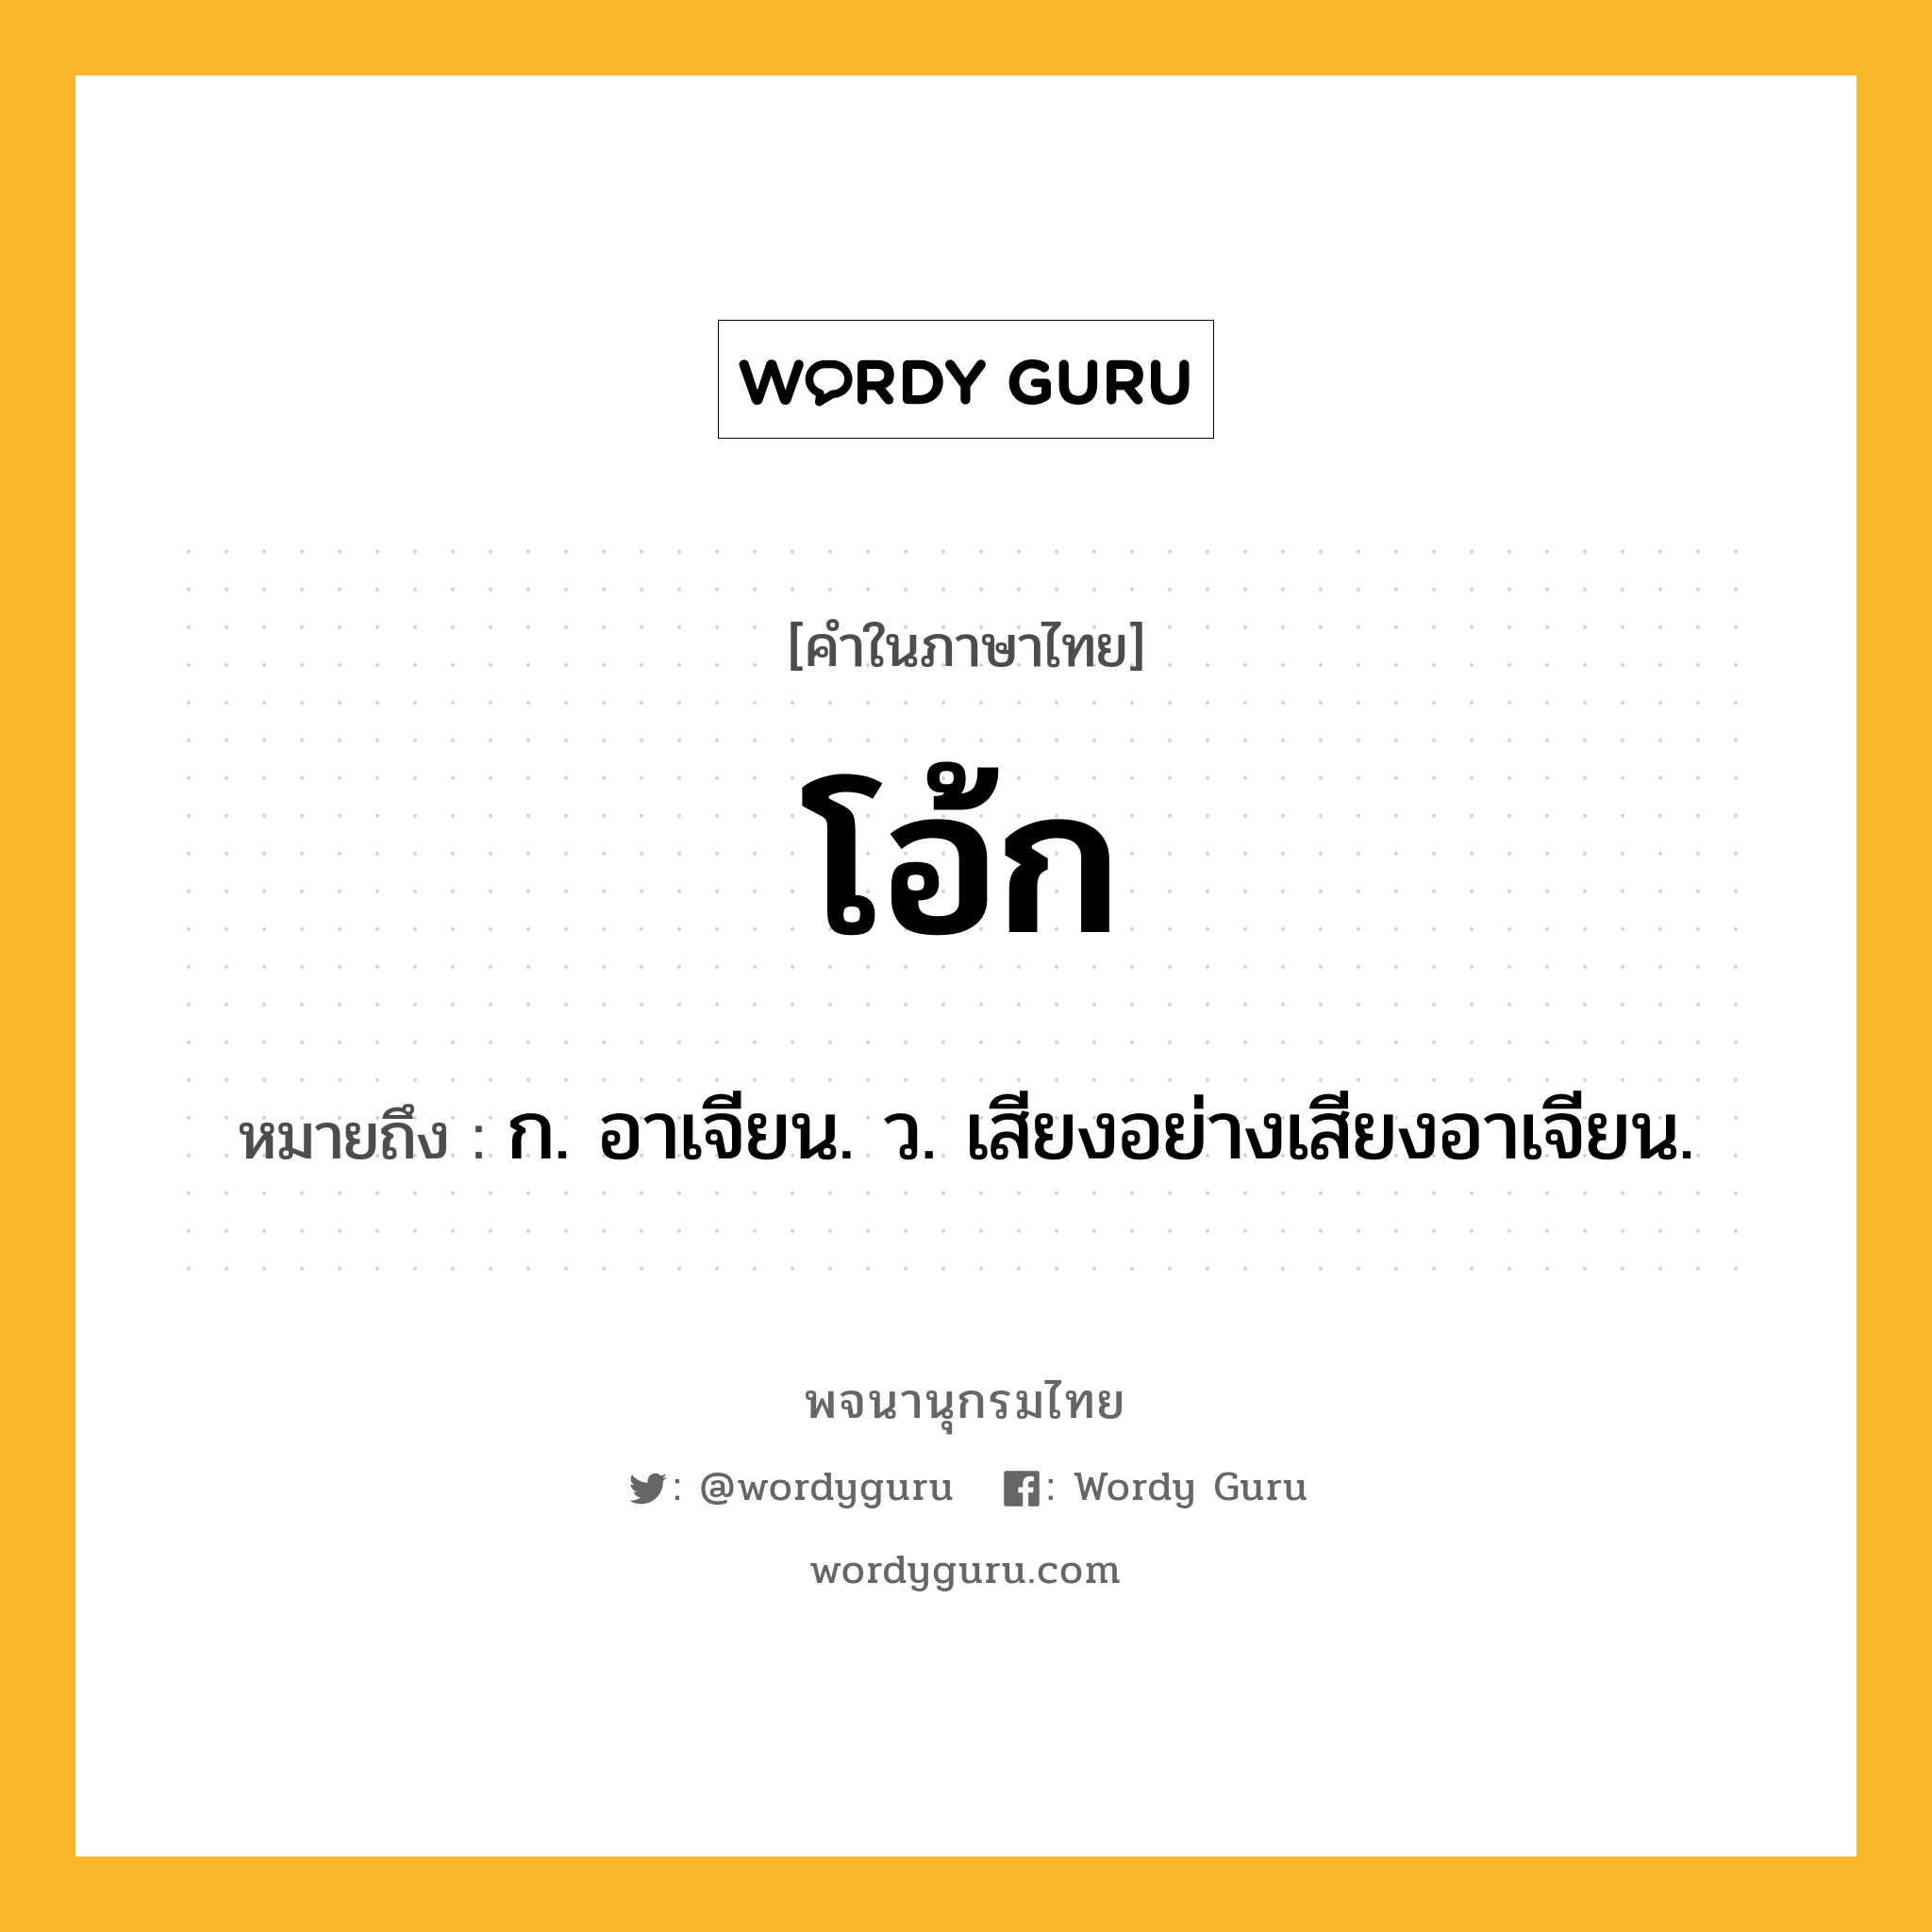 โอ้ก ความหมาย หมายถึงอะไร?, คำในภาษาไทย โอ้ก หมายถึง ก. อาเจียน. ว. เสียงอย่างเสียงอาเจียน.